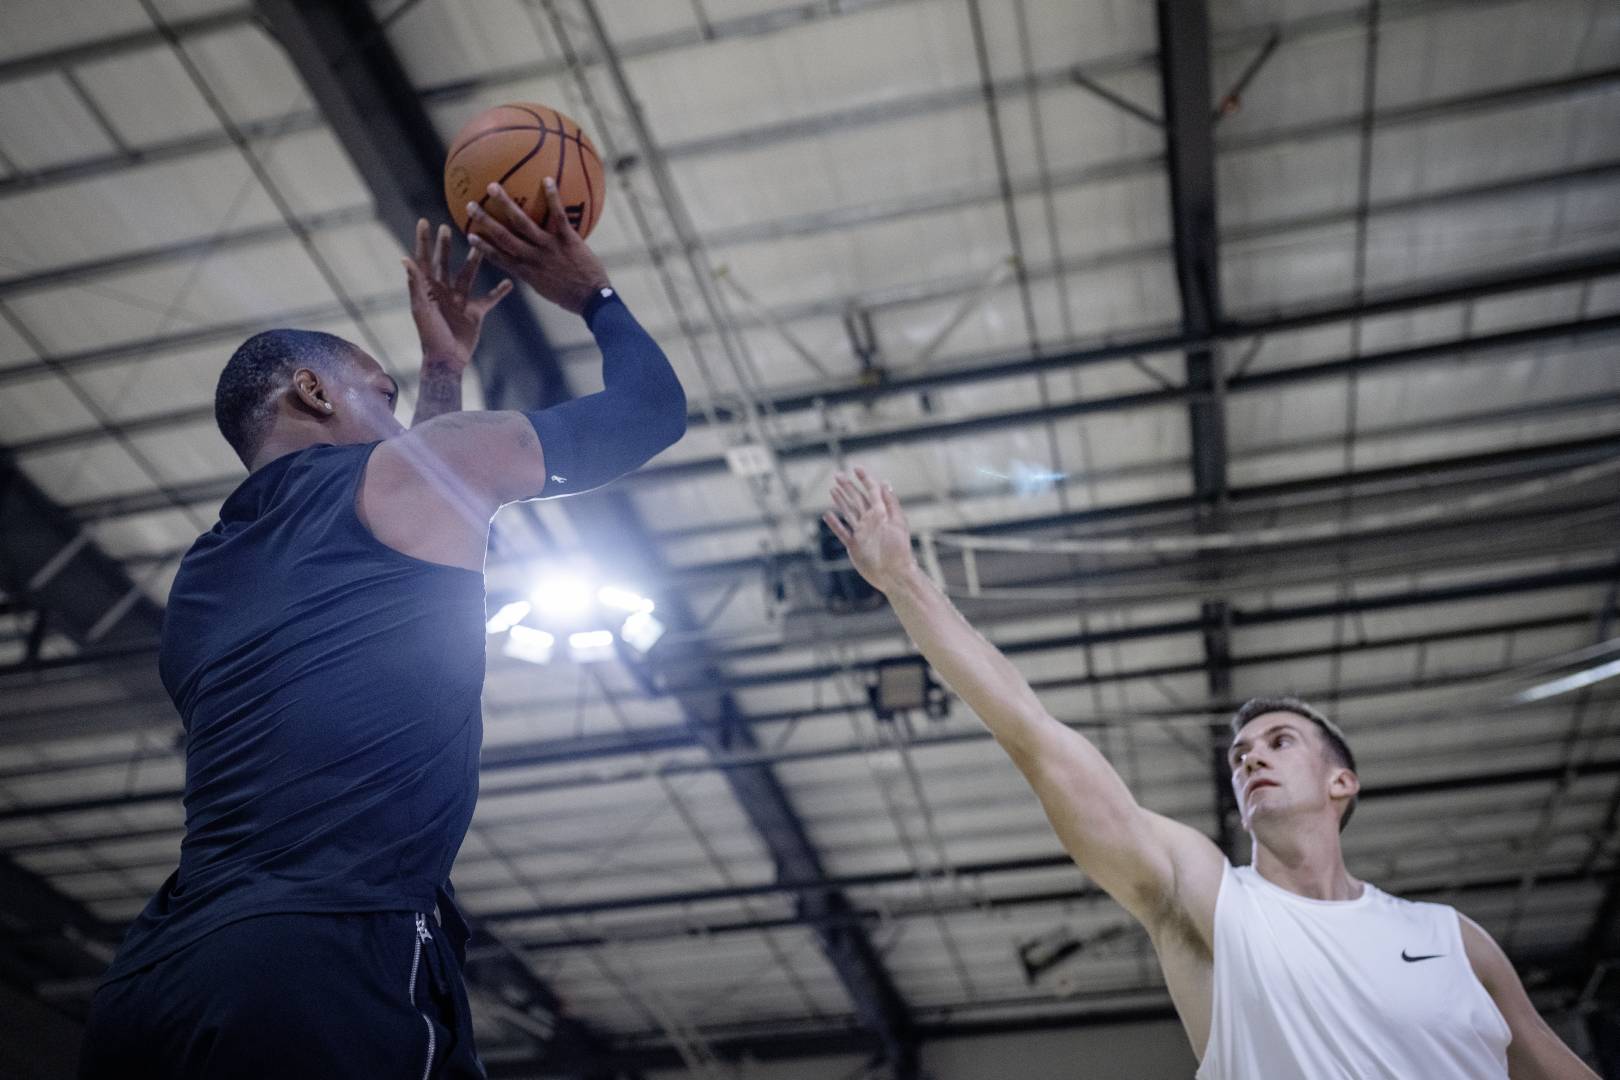 Basketbalspelers met een Blue Armsleeve in Sports Hall probeert de uitgestrekte arm van een tegenovergestelde over te gooien